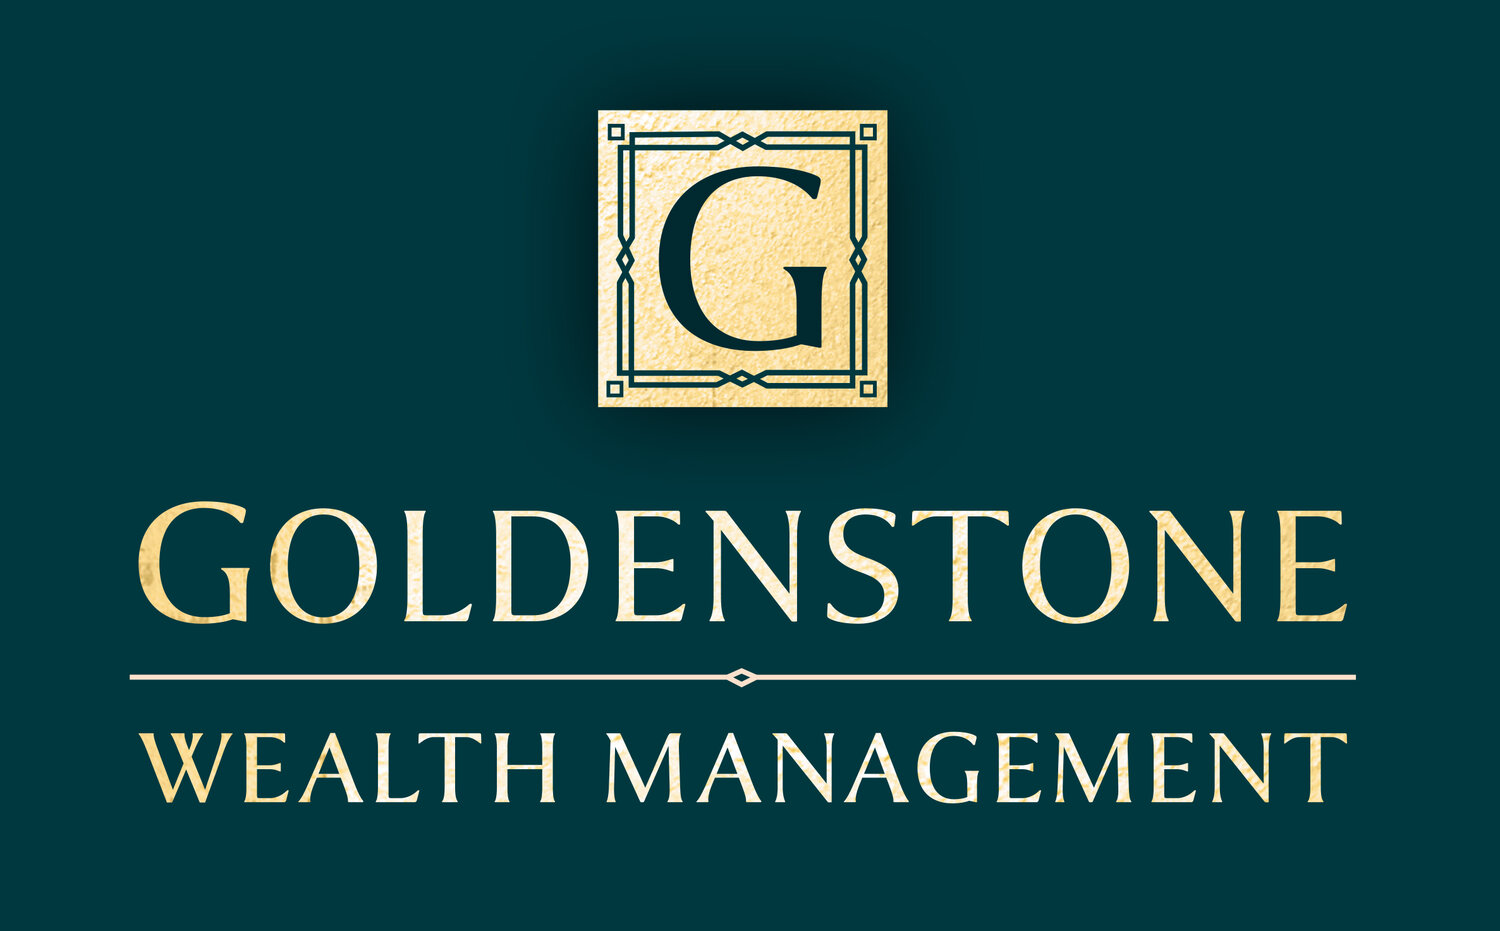 Goldenstone Wealth Management